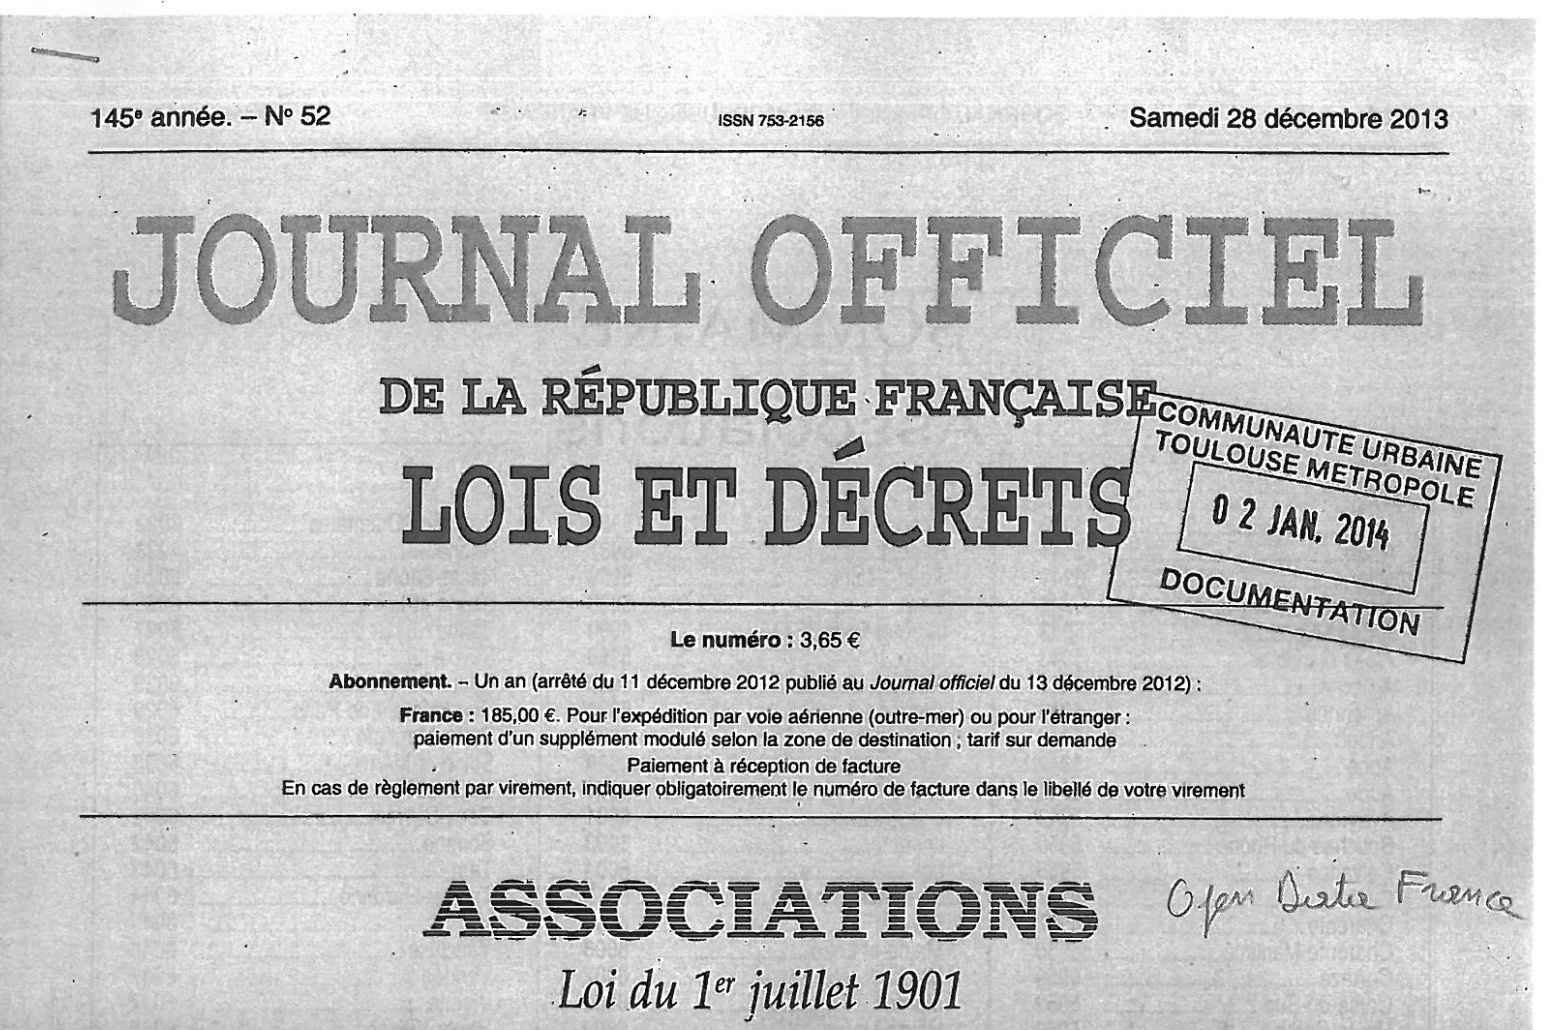 Journal officiel annonçant la création de l'association OpenDataFrance - Archive 28 décembre 1013